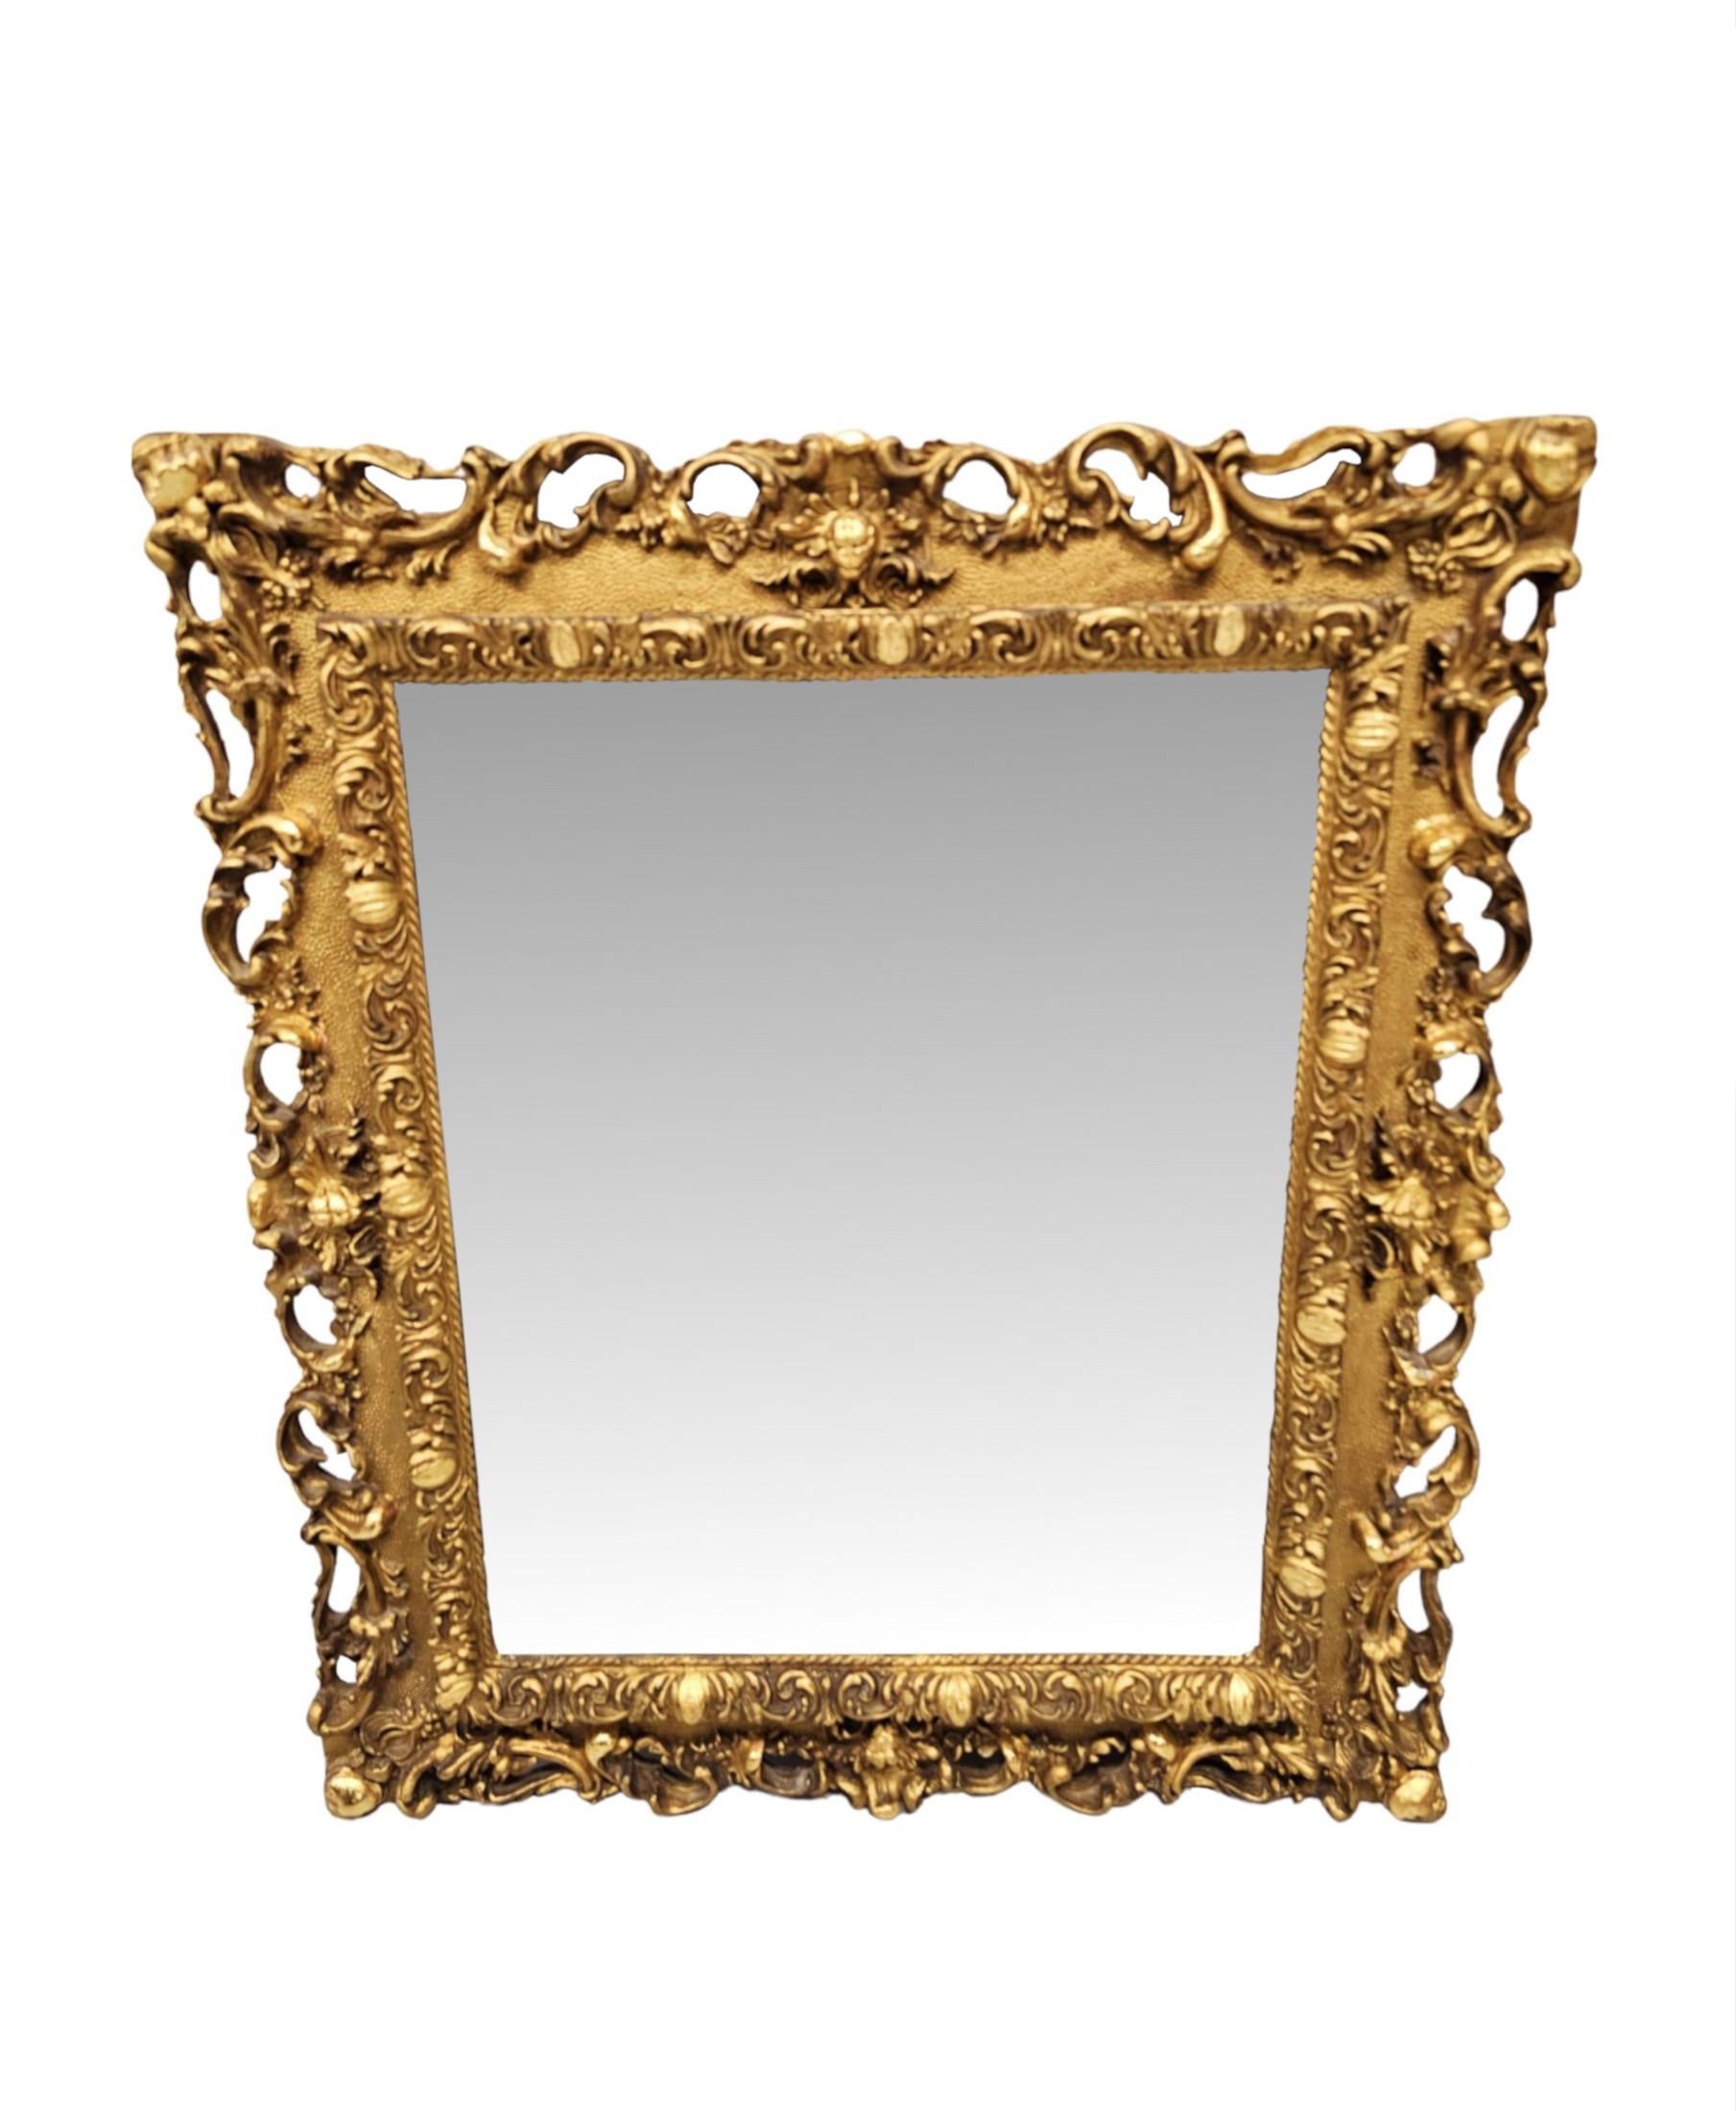 Ein sehr seltenes Paar vergoldeter Spiegel aus dem späten 19. Jahrhundert, fein von Hand geschnitzt und von außergewöhnlicher Qualität.  Die originale, abgeschrägte, rechteckige Spiegelglasplatte befindet sich in einem atemberaubend verzierten,